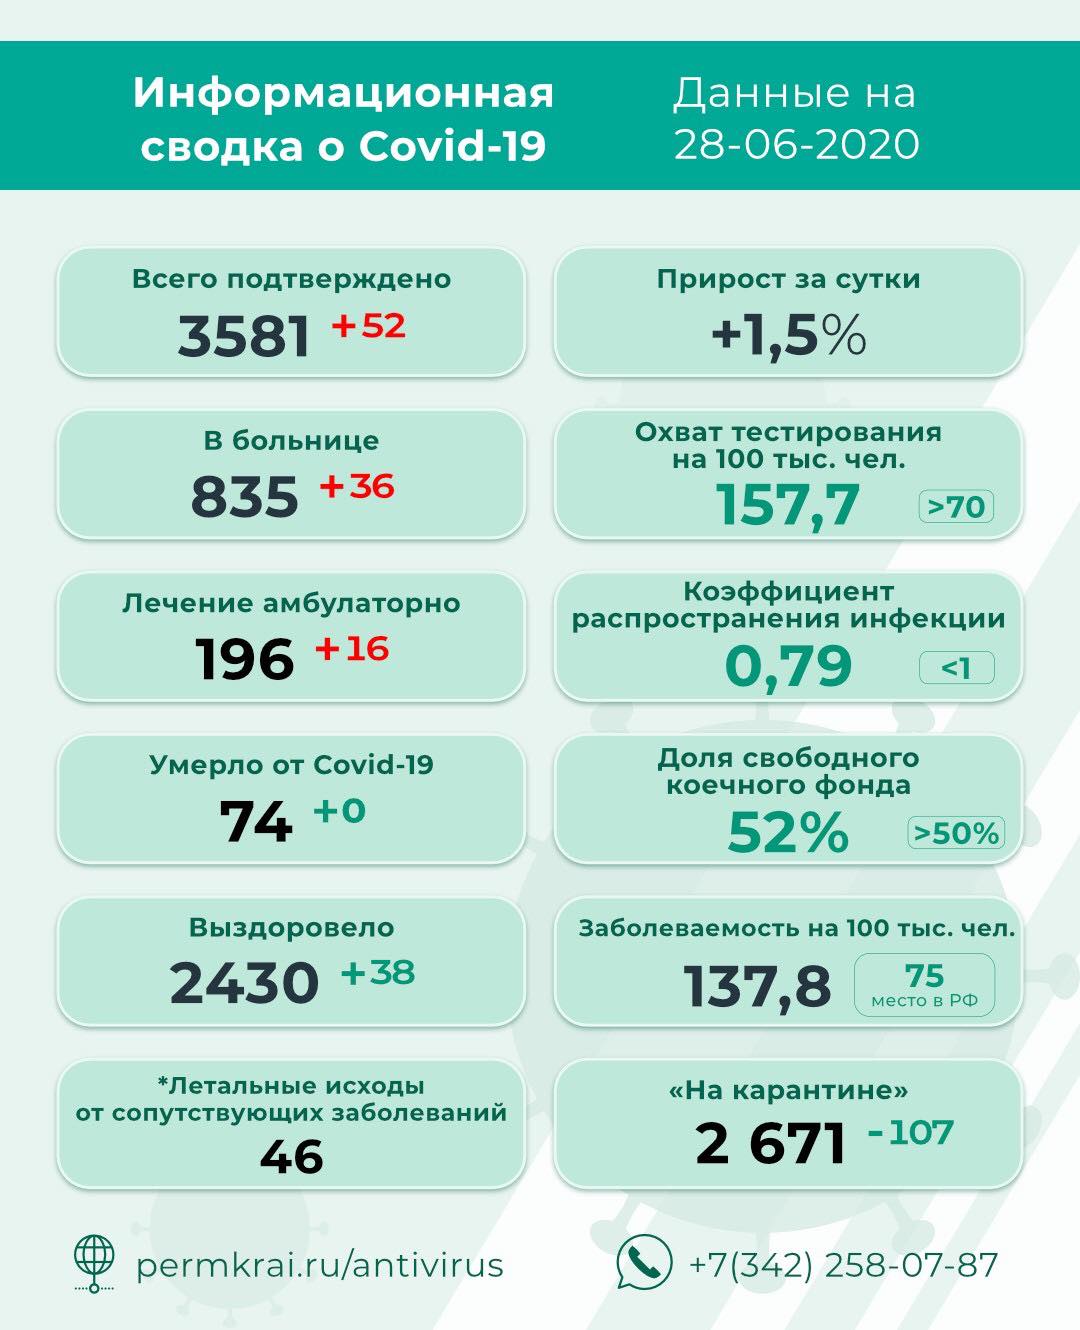 +52: коэффициент распространения инфекции в Прикамье снизился до 0,79